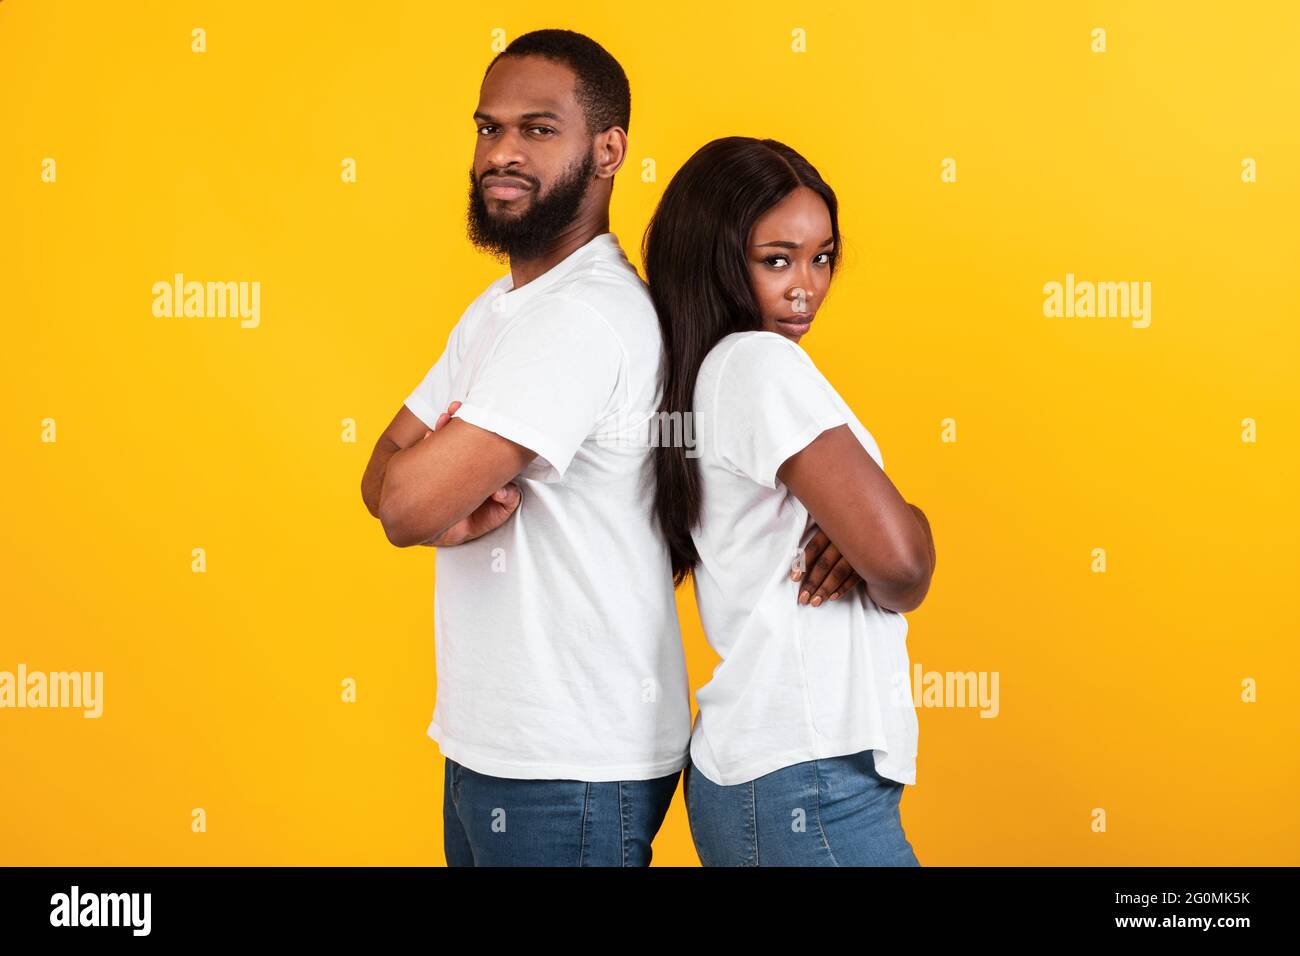 Una coppia afro che si erge dietro la schiena, parete gialla arancione dello studio Foto Stock